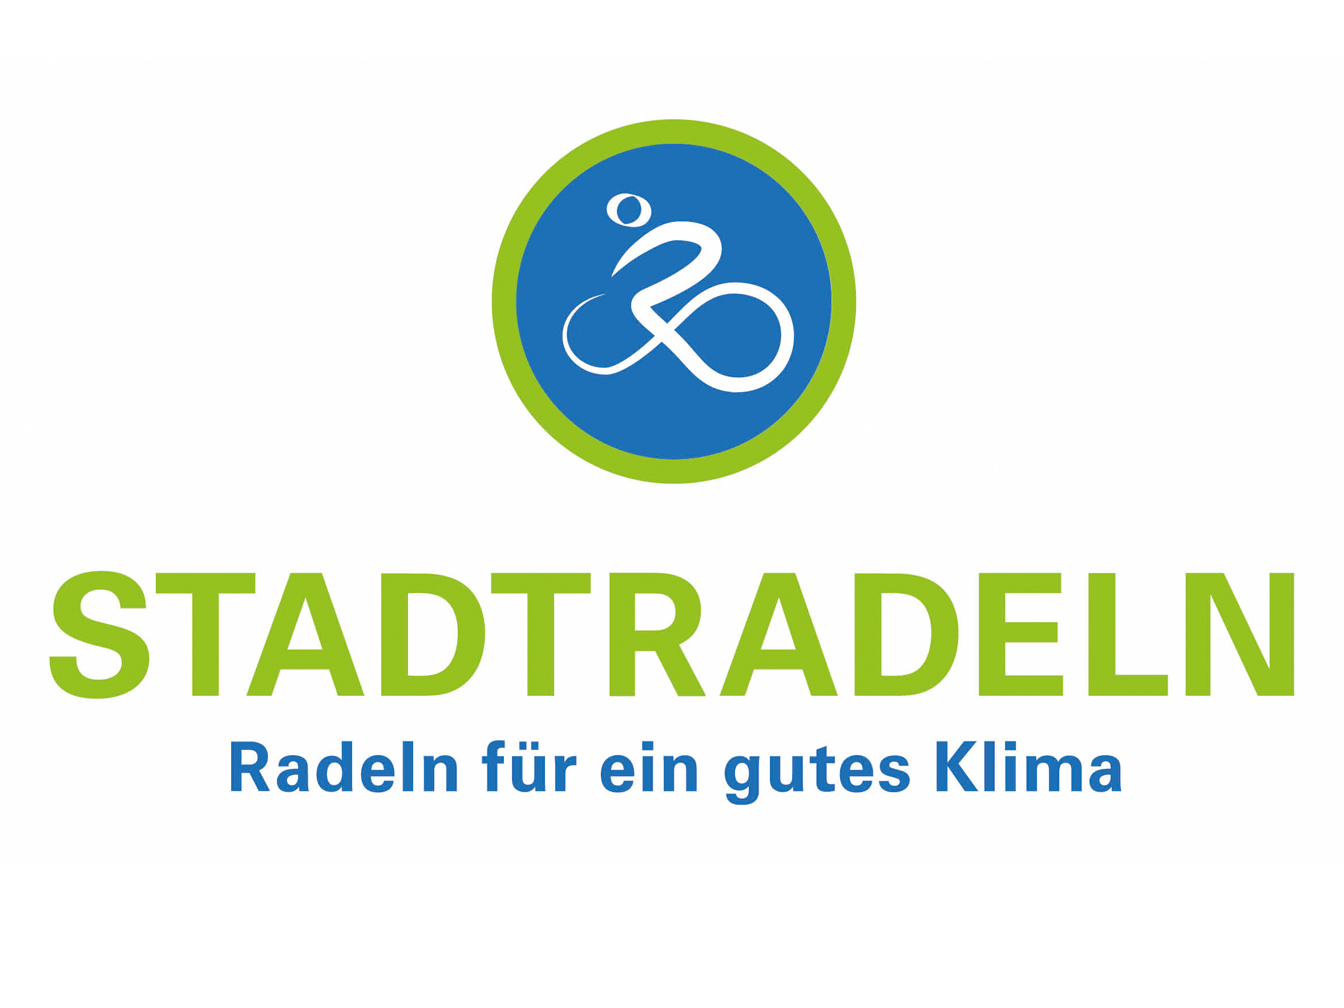 STADTRADELN-Logo, stilisierter Radler auf Fahrrad, außerdem der Text "STADTRADELN - Radeln für ein gutes Klima"